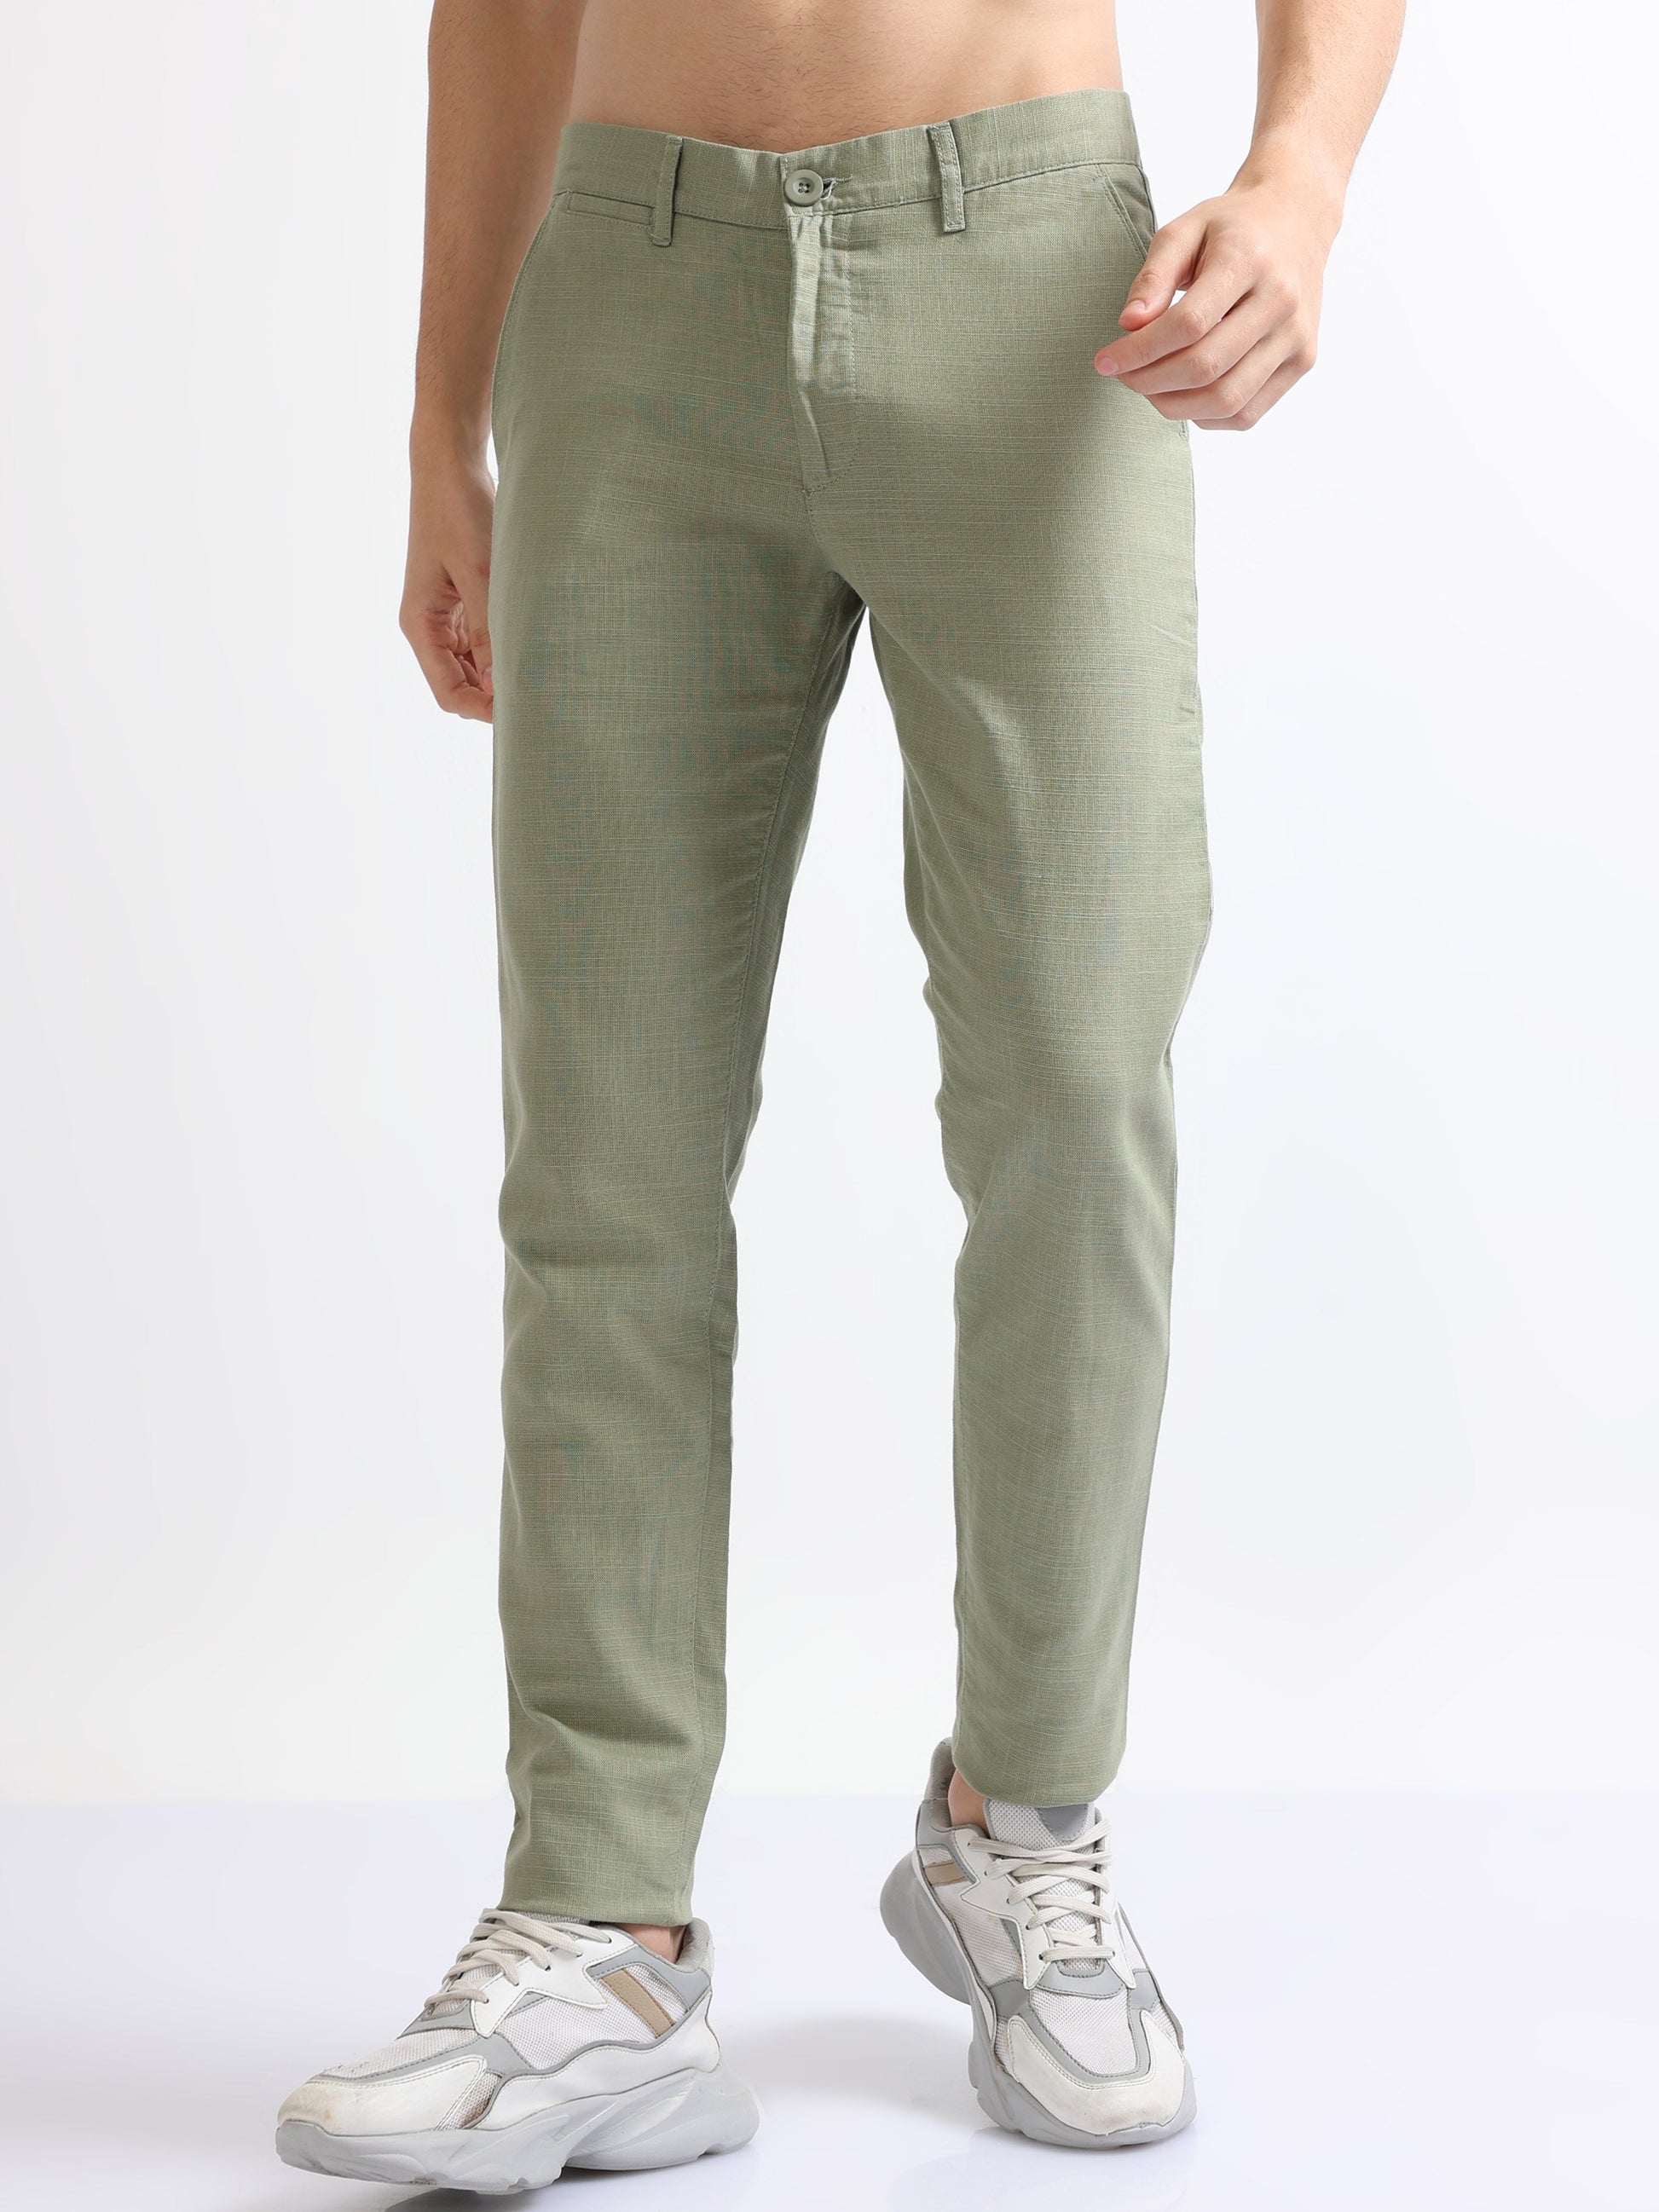 Buy Mens Linen Cotton Pants Online